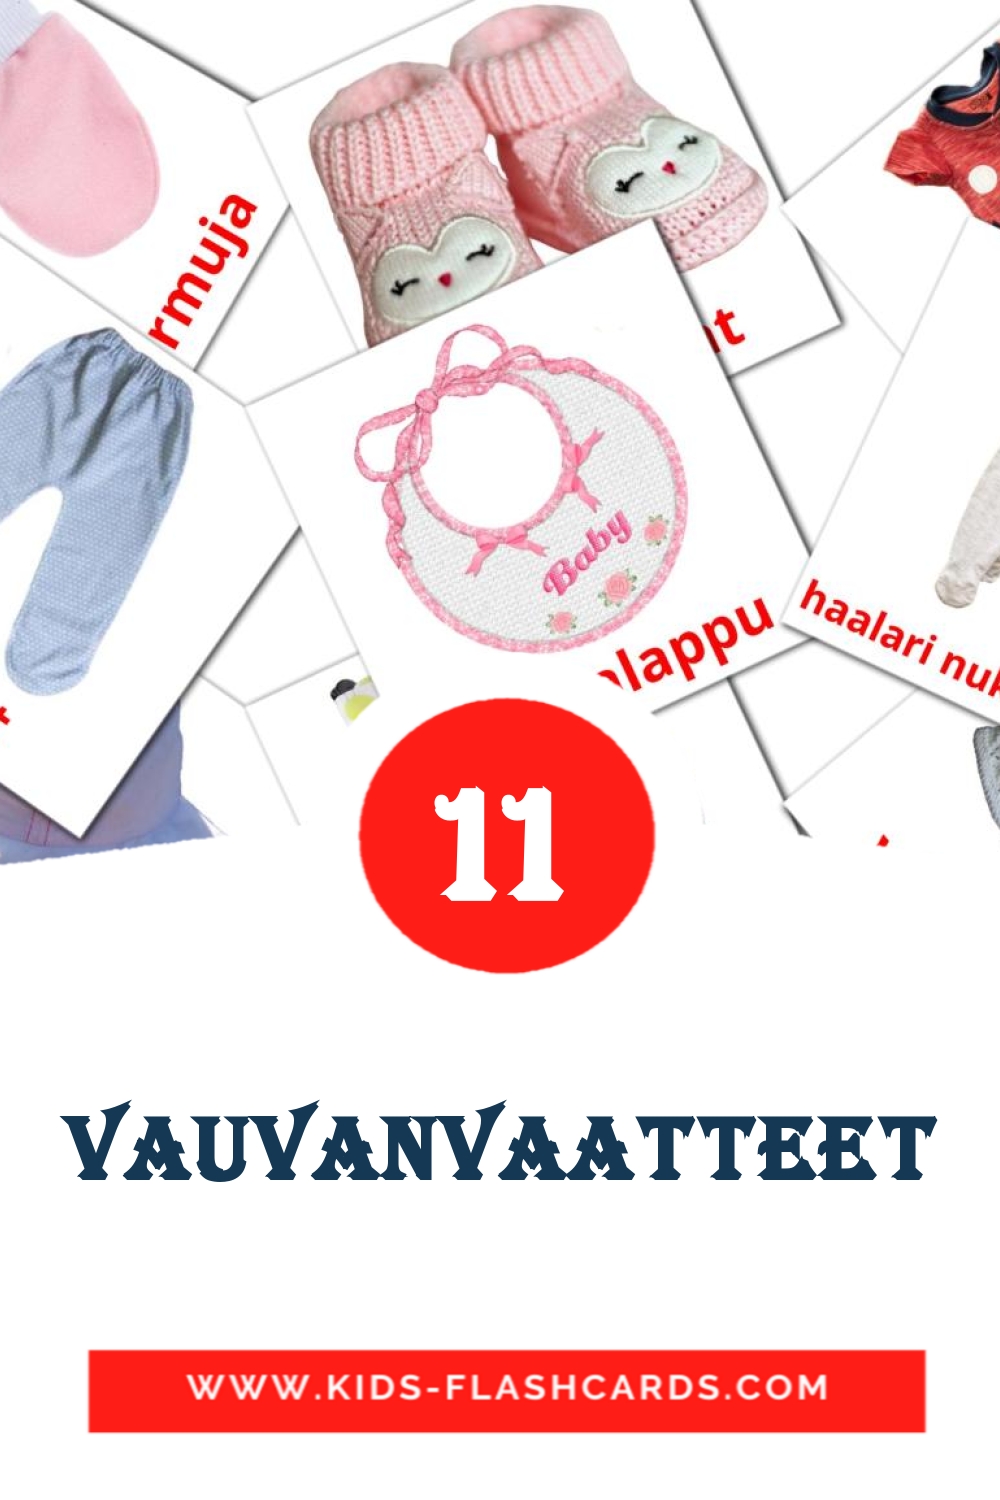 11 tarjetas didacticas de vauvanvaatteet para el jardín de infancia en finlandés